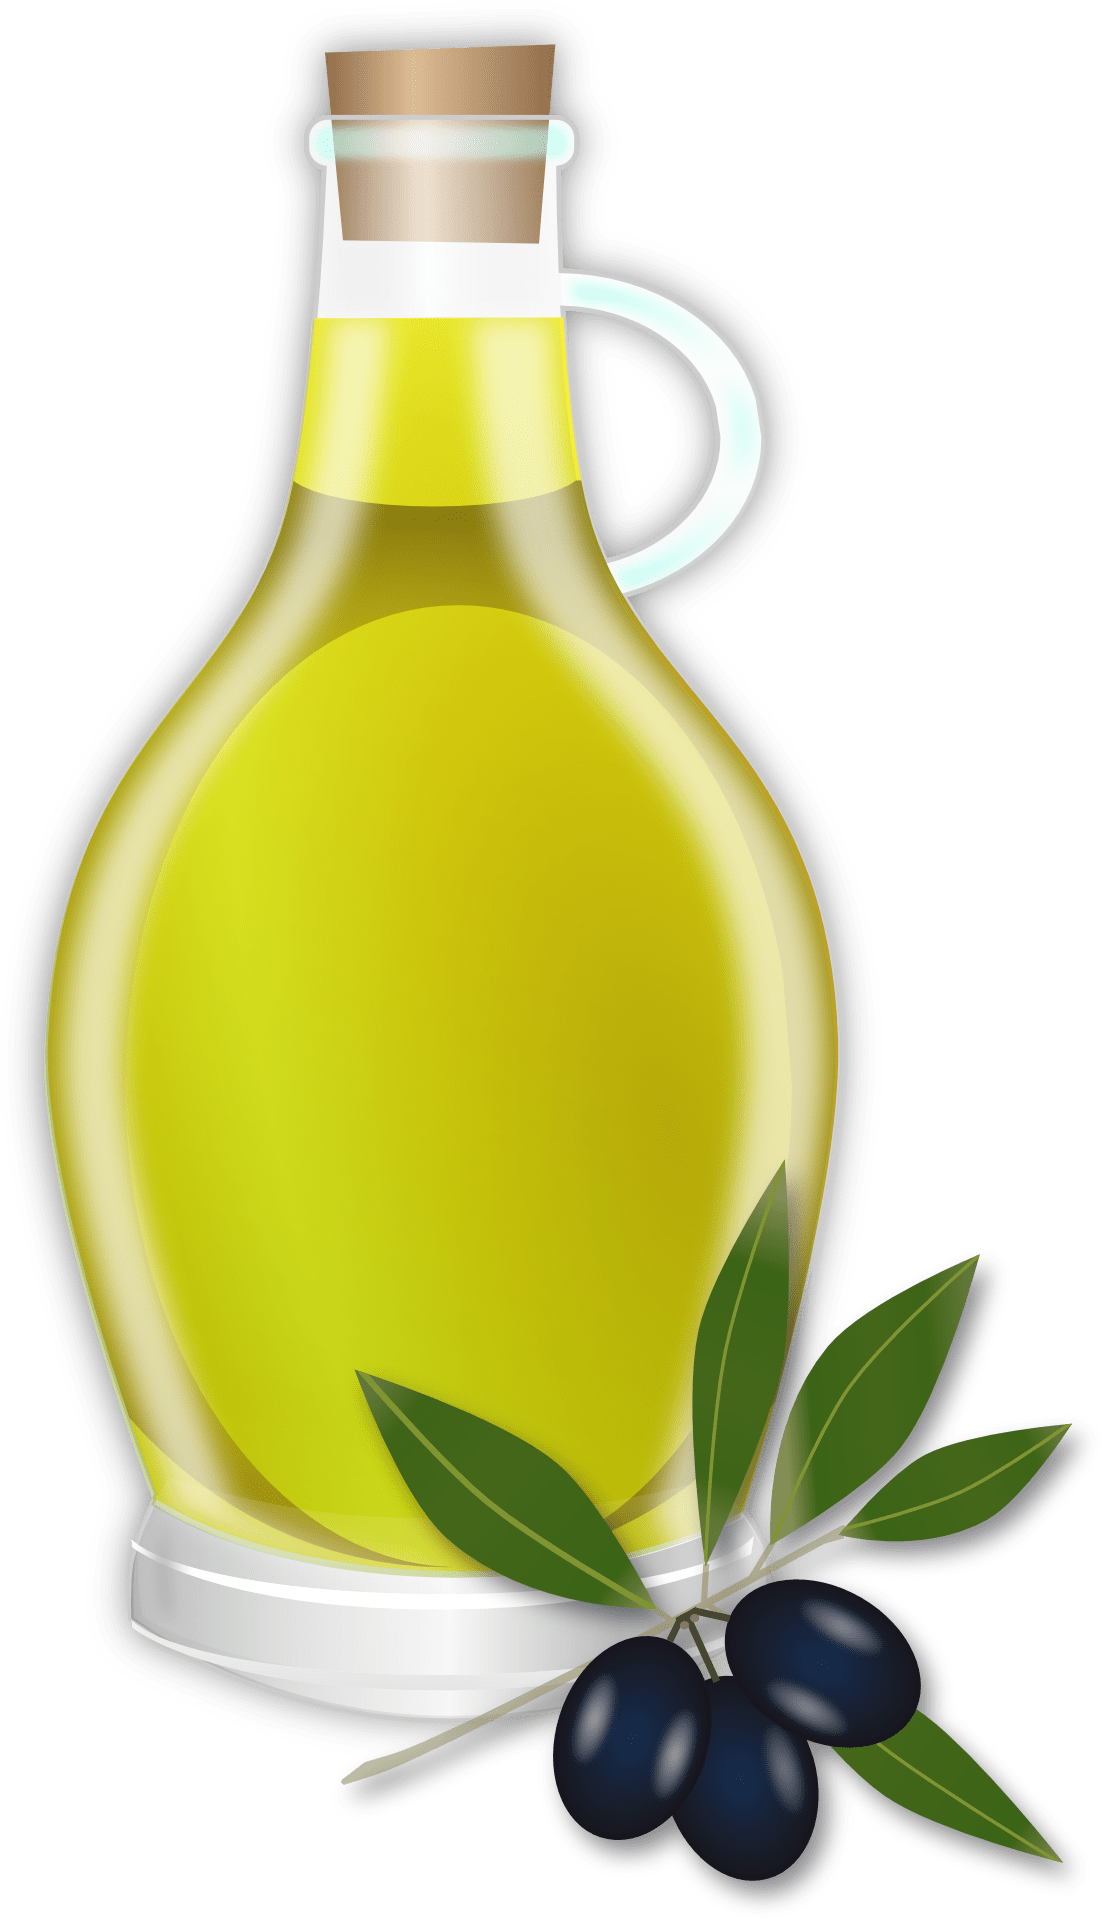 oil, olive oil, bottle